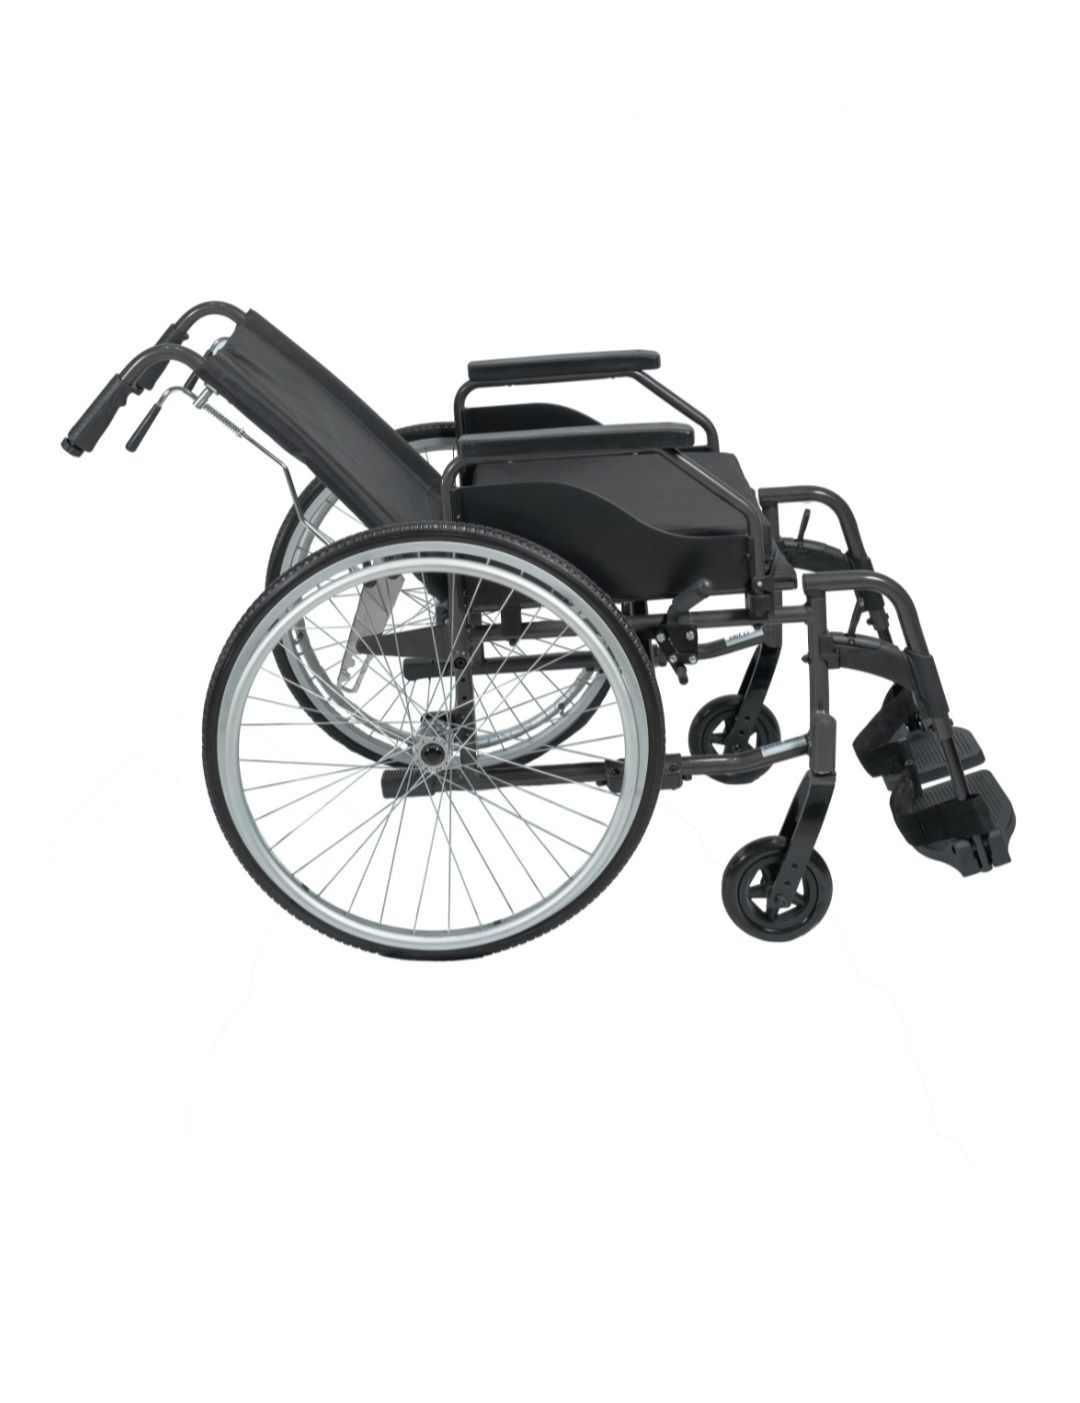 голд 400
кресло-коляска, механический
Тип